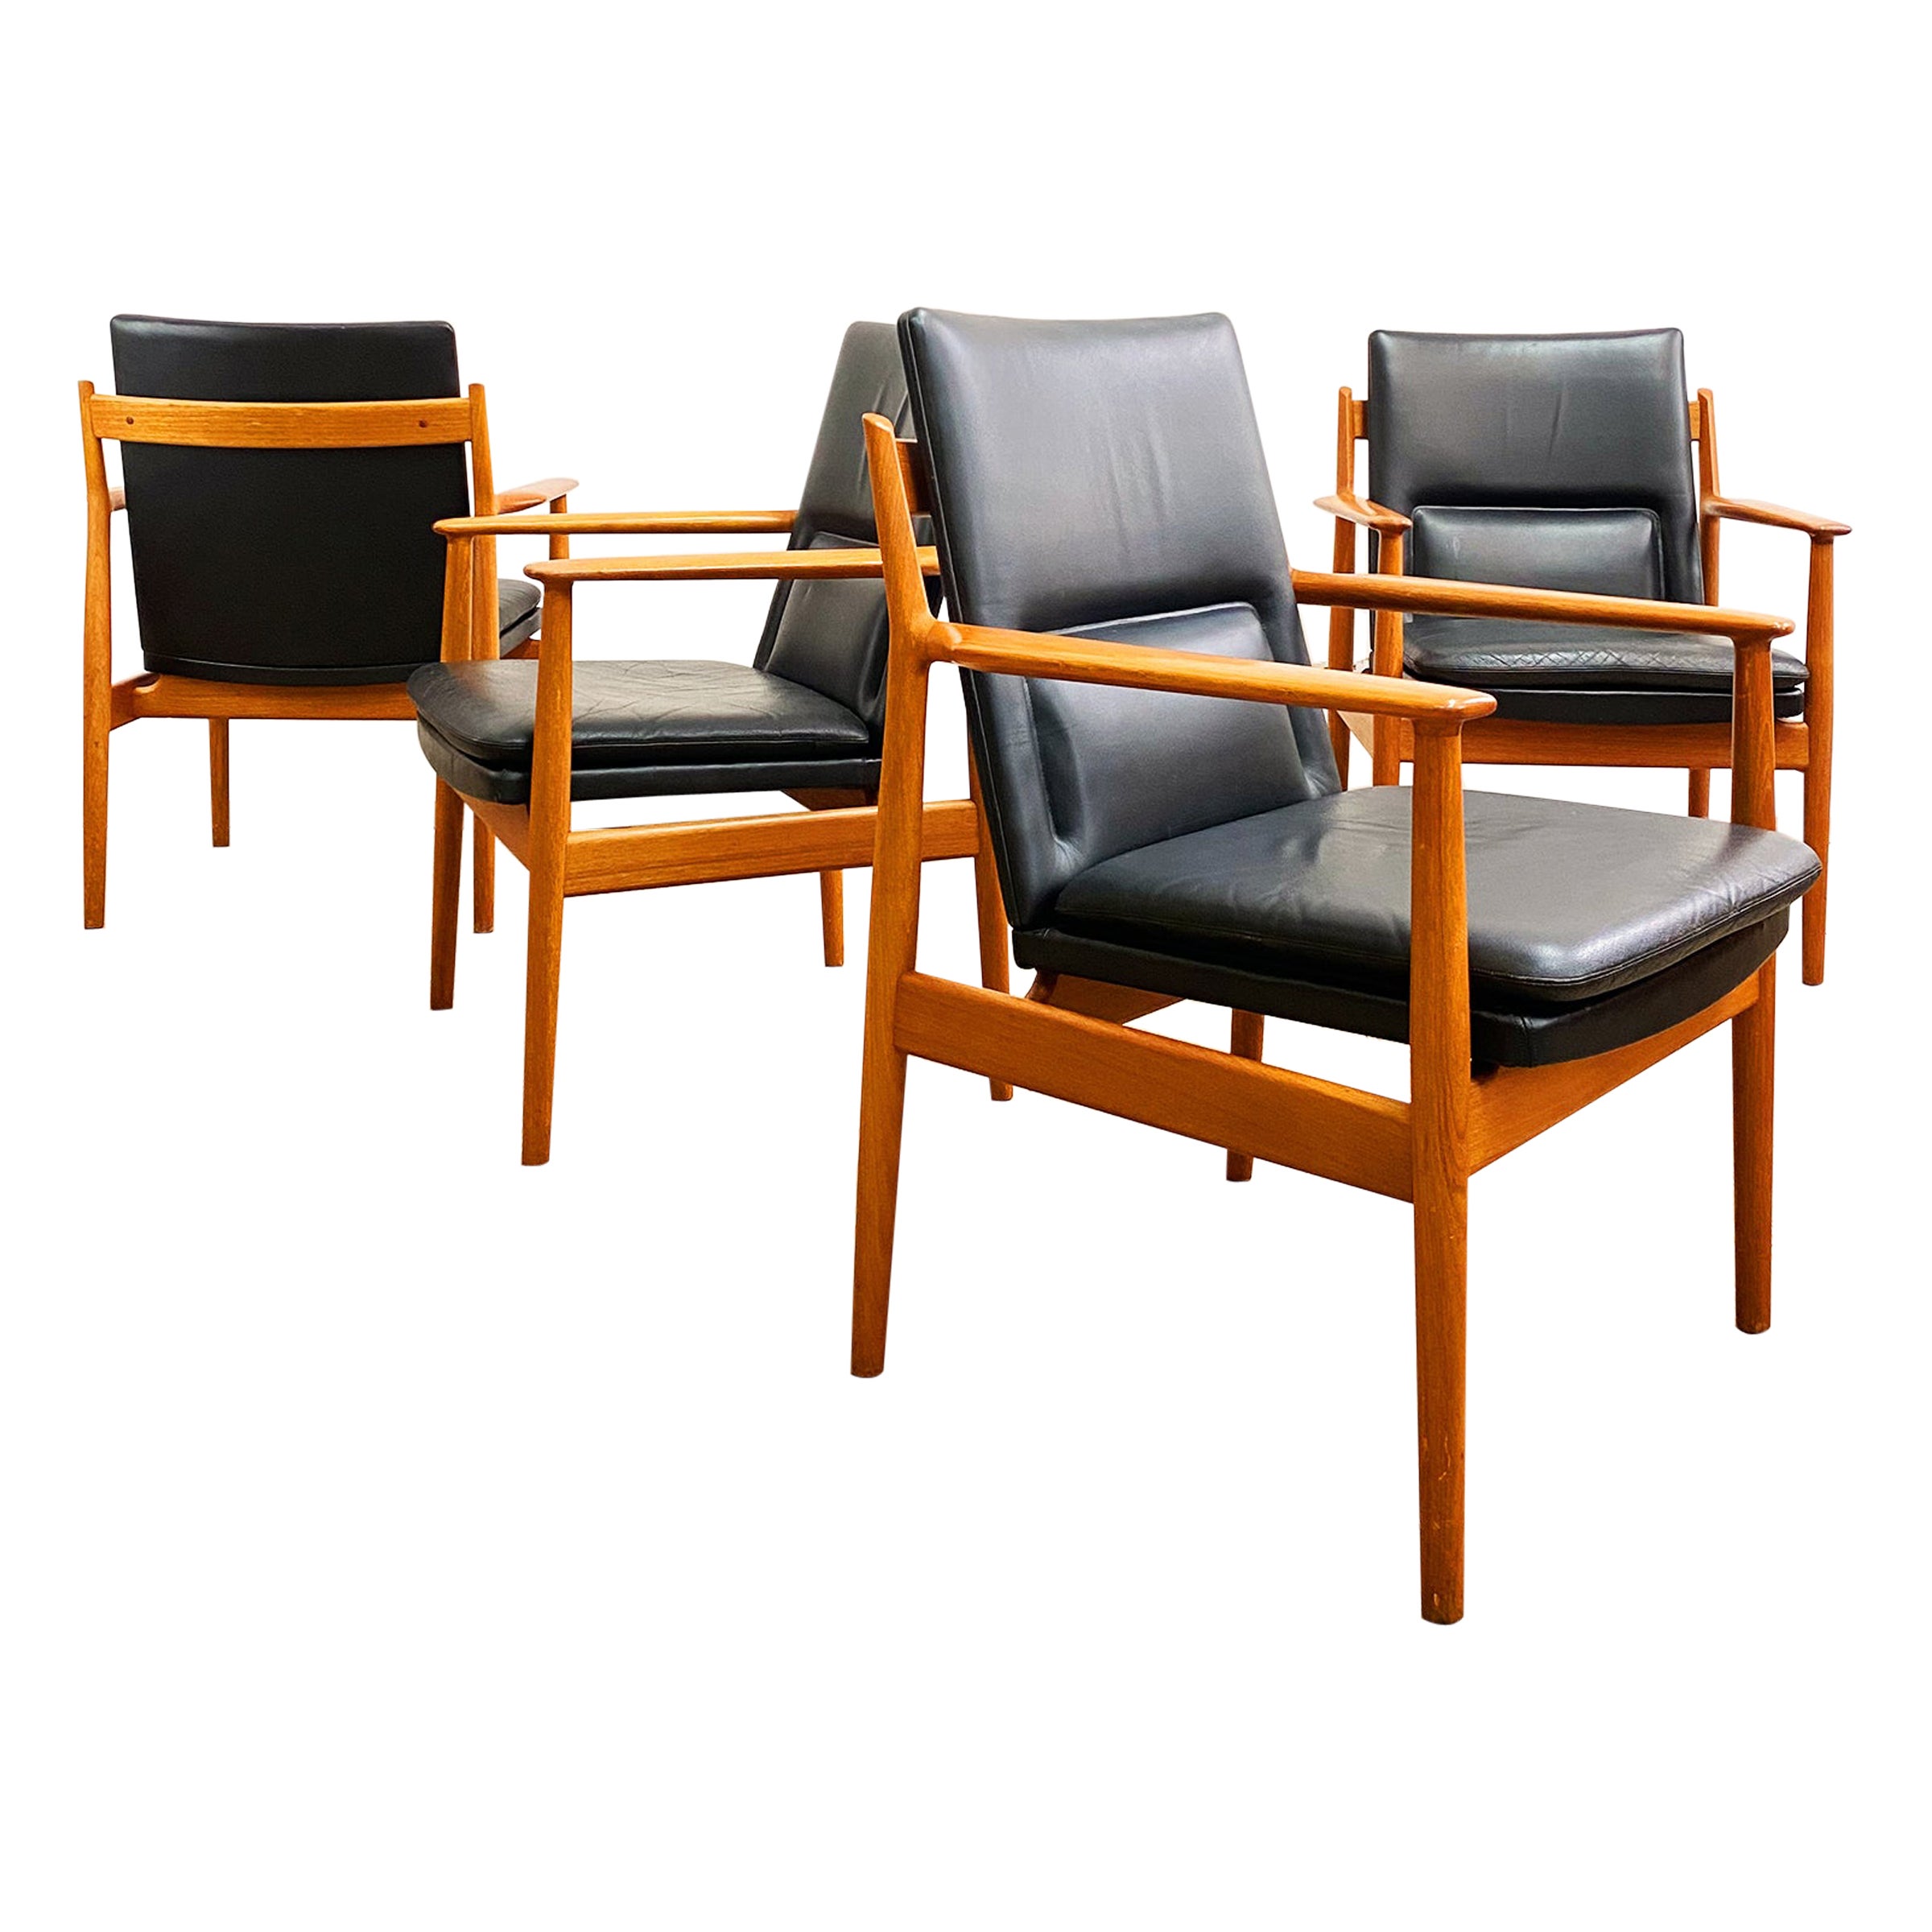 Danish Mid Century Teak Armrest Dining Chairs, Model 431 by Arne Vodder, Sibast